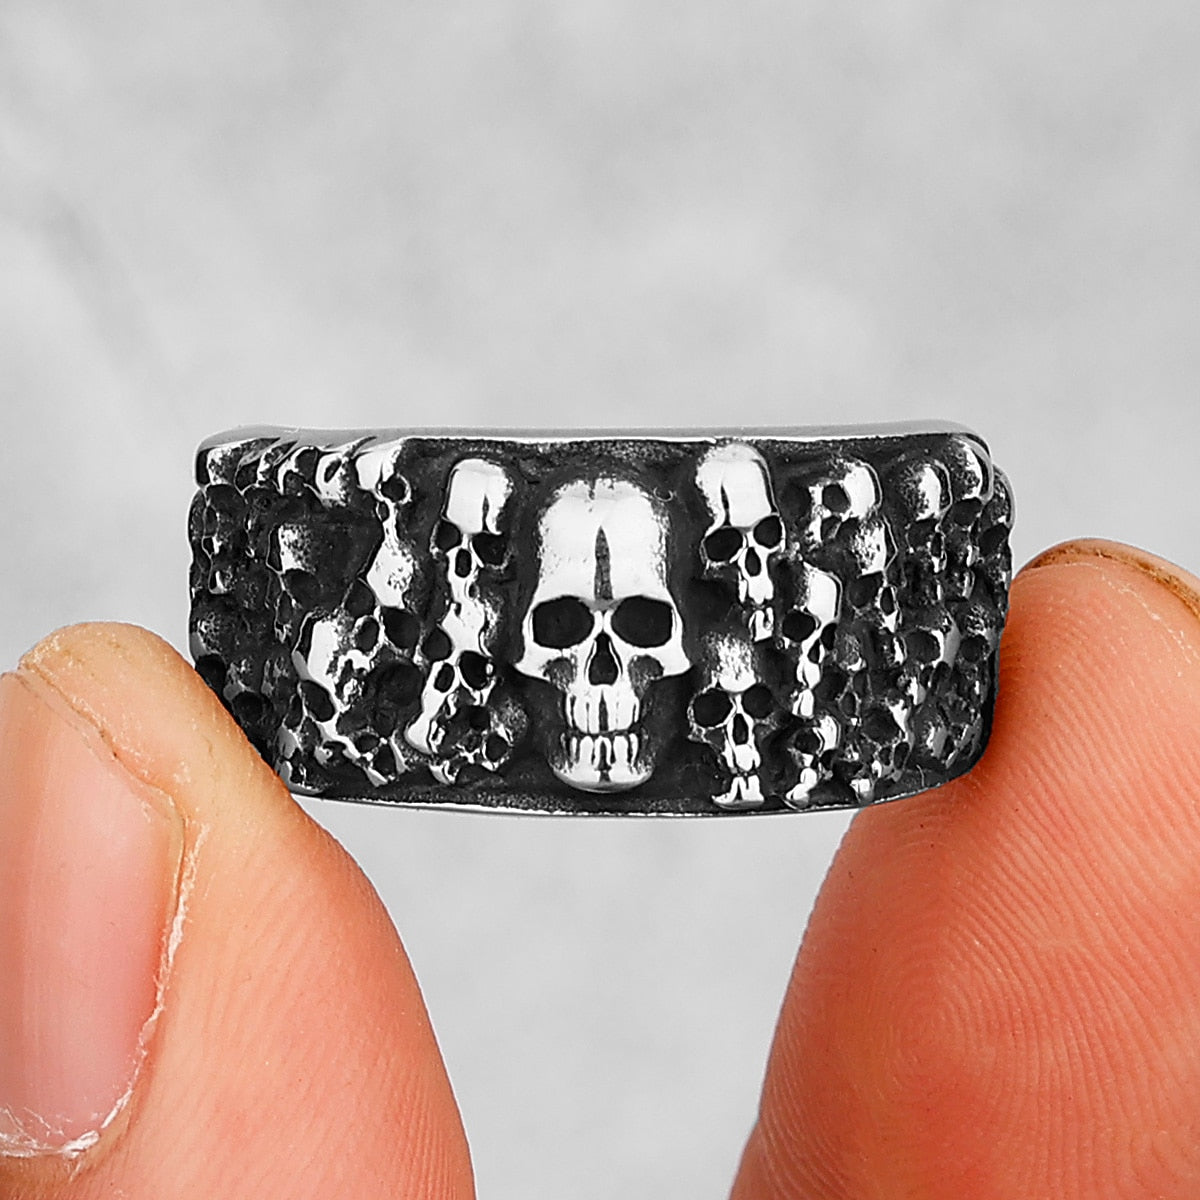 Retro Bad Boy Biker Skull Rings, badass skull ring, badass skull accessories